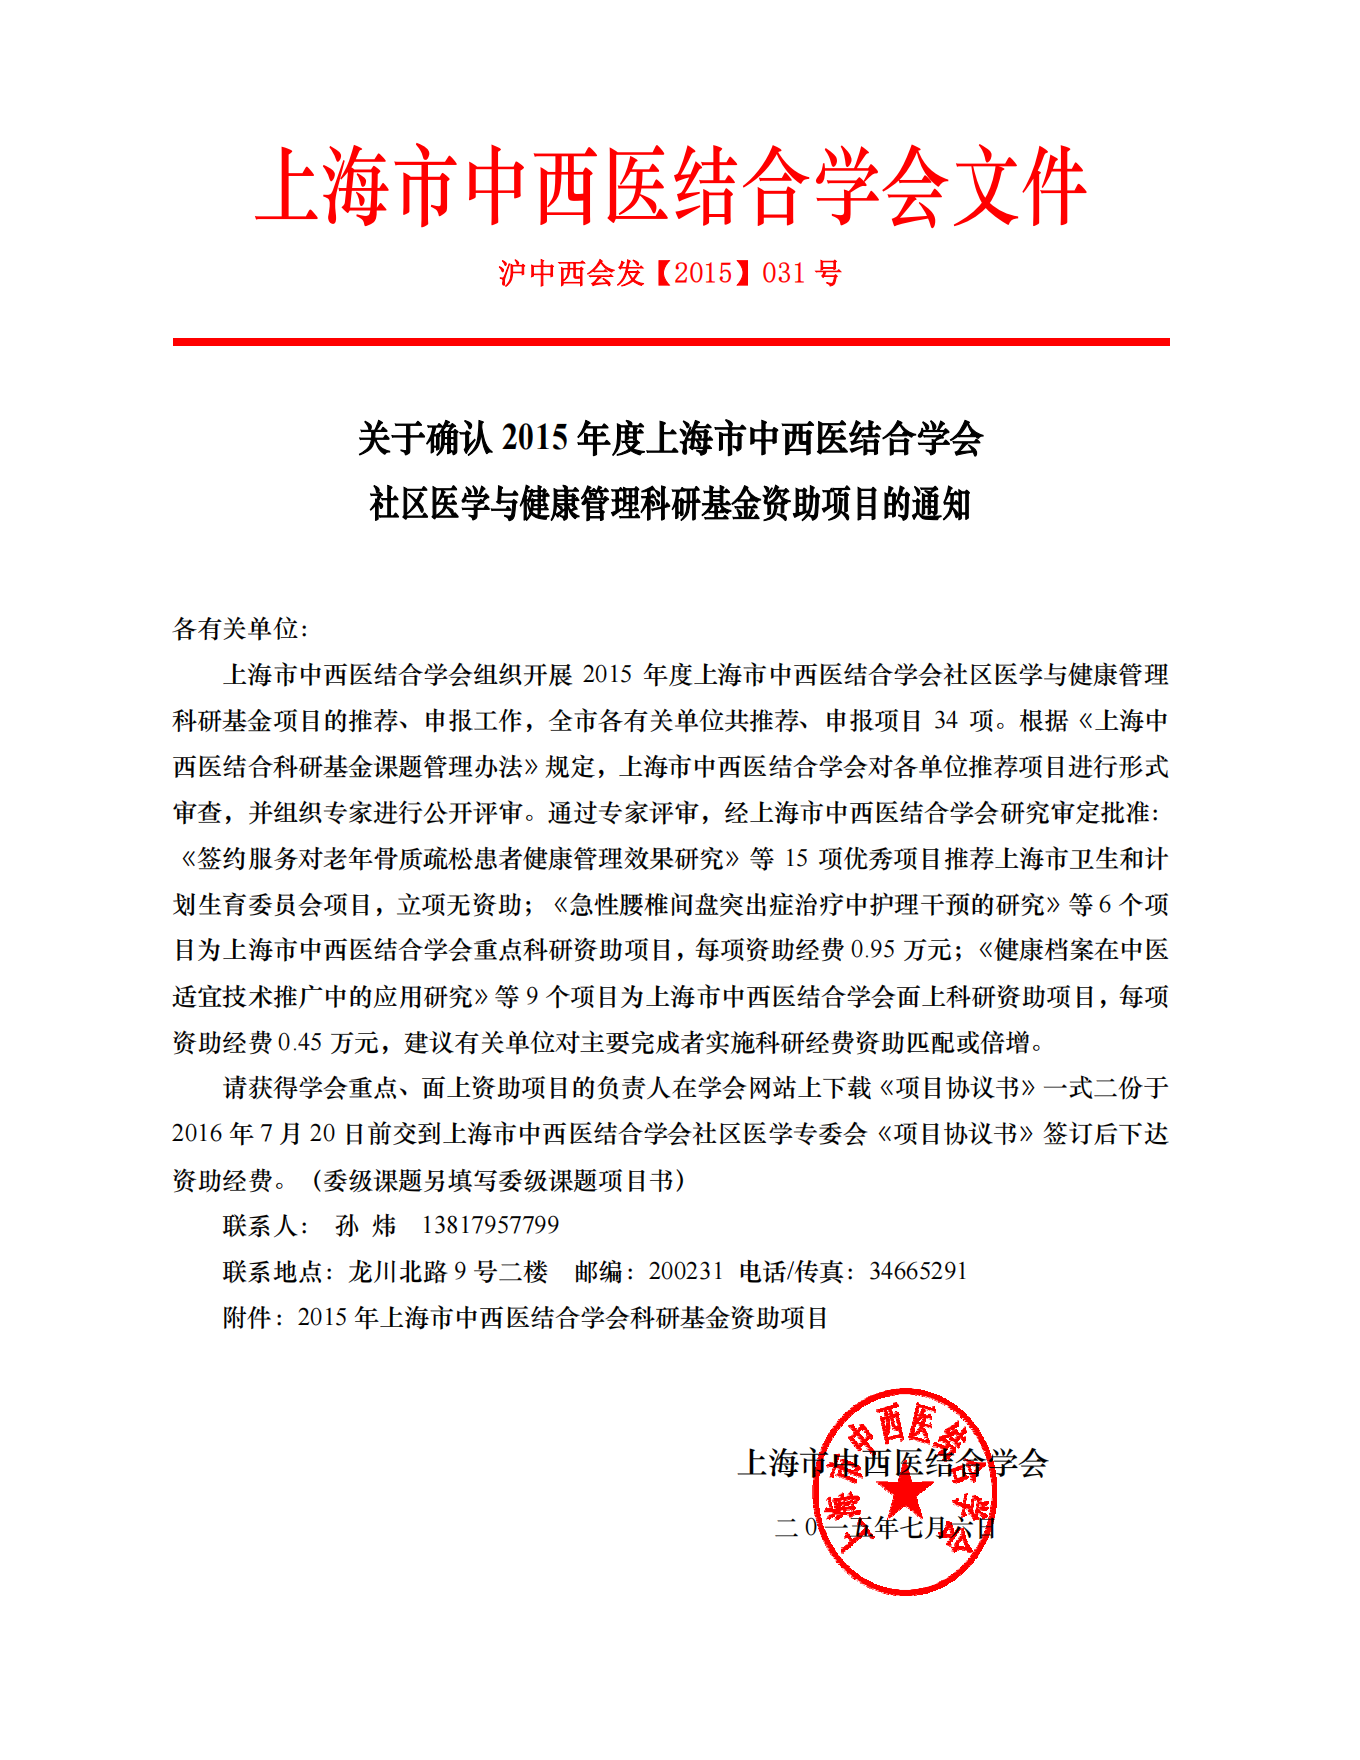 2015年上海市中西医结合学会社区医学与健康管理科研基金立项通知_00.png